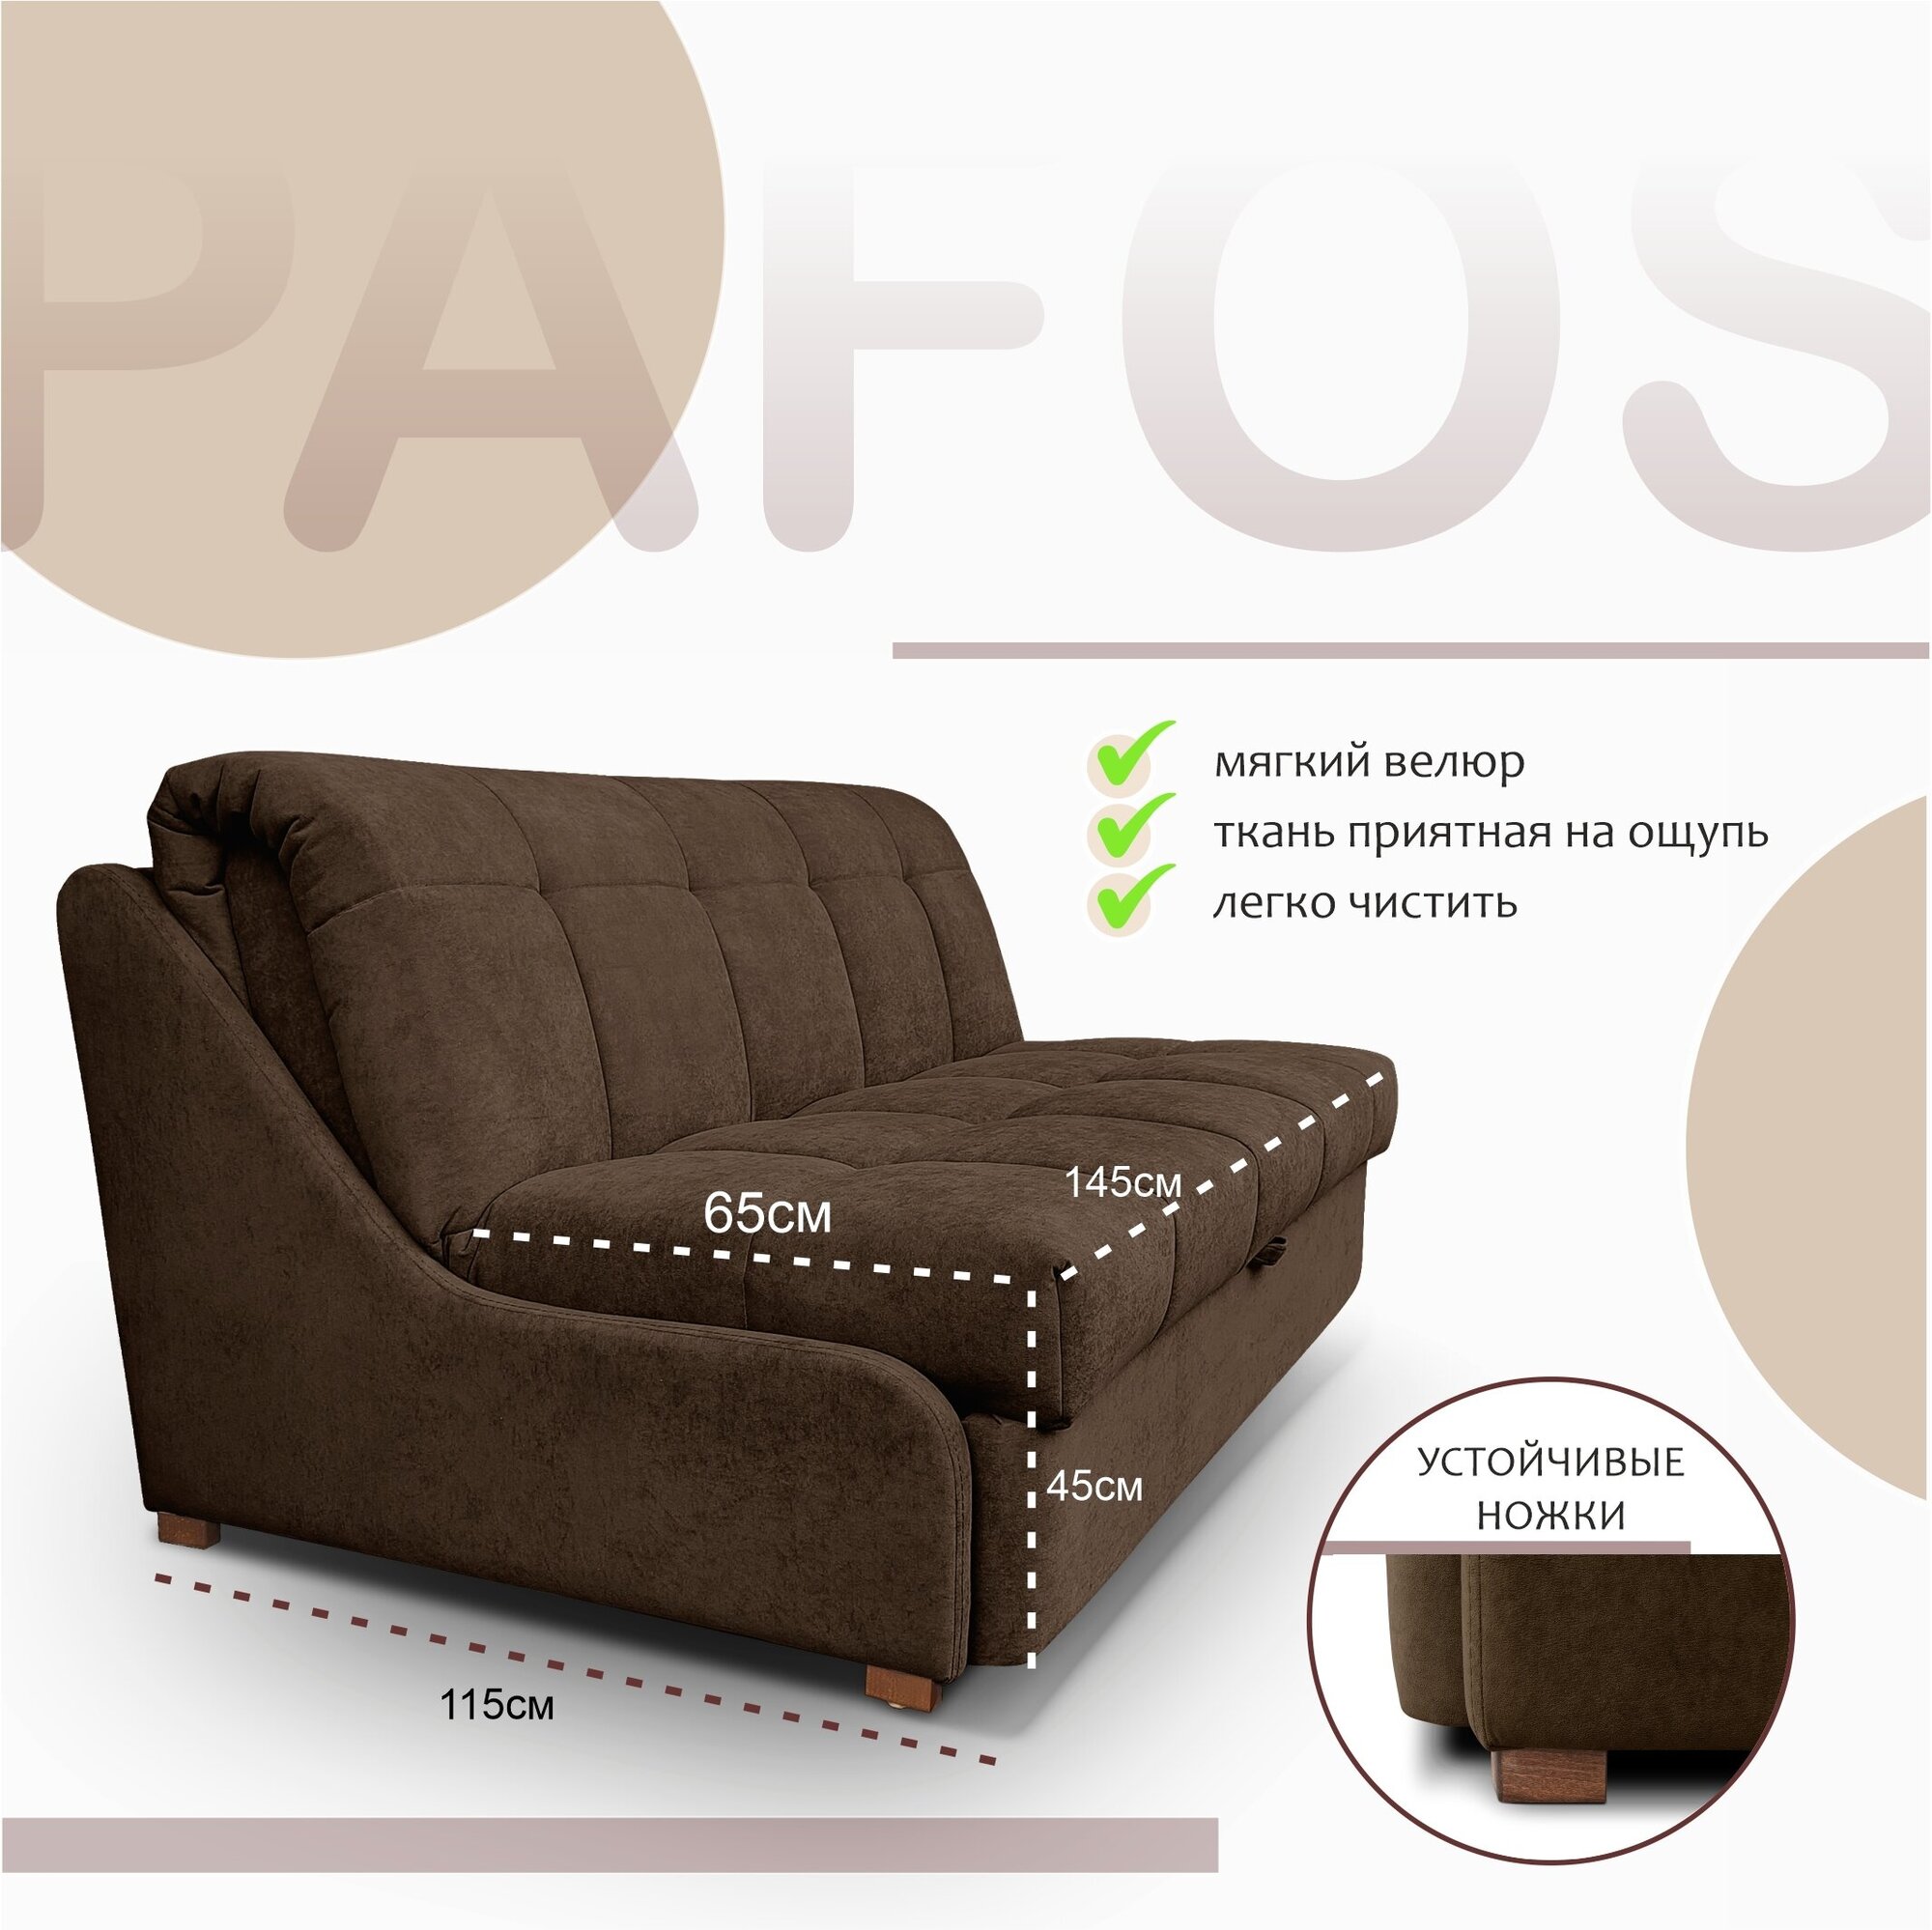 Пафос - диван-кровать Пафос (коричневый) с подушками, механизм аккордеон, без подлокотников, механизм аккордеон, 145х115х87 см